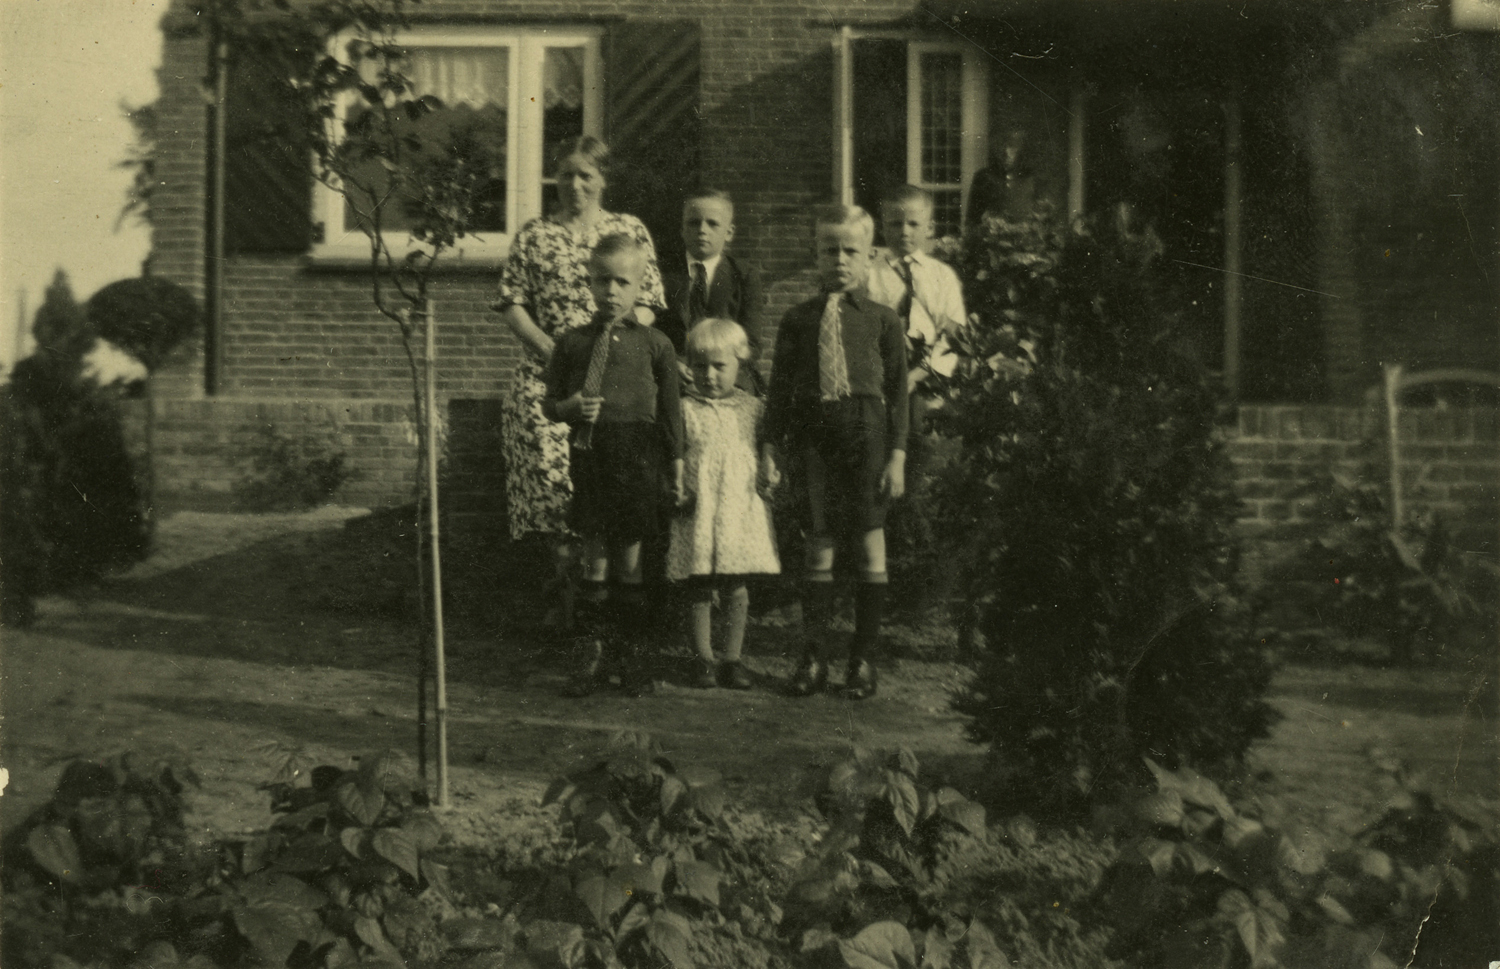 het gezin Feddes met vijf kinderen, vermoedelijk voor de woning naast de boerderij, waar opa woonde.